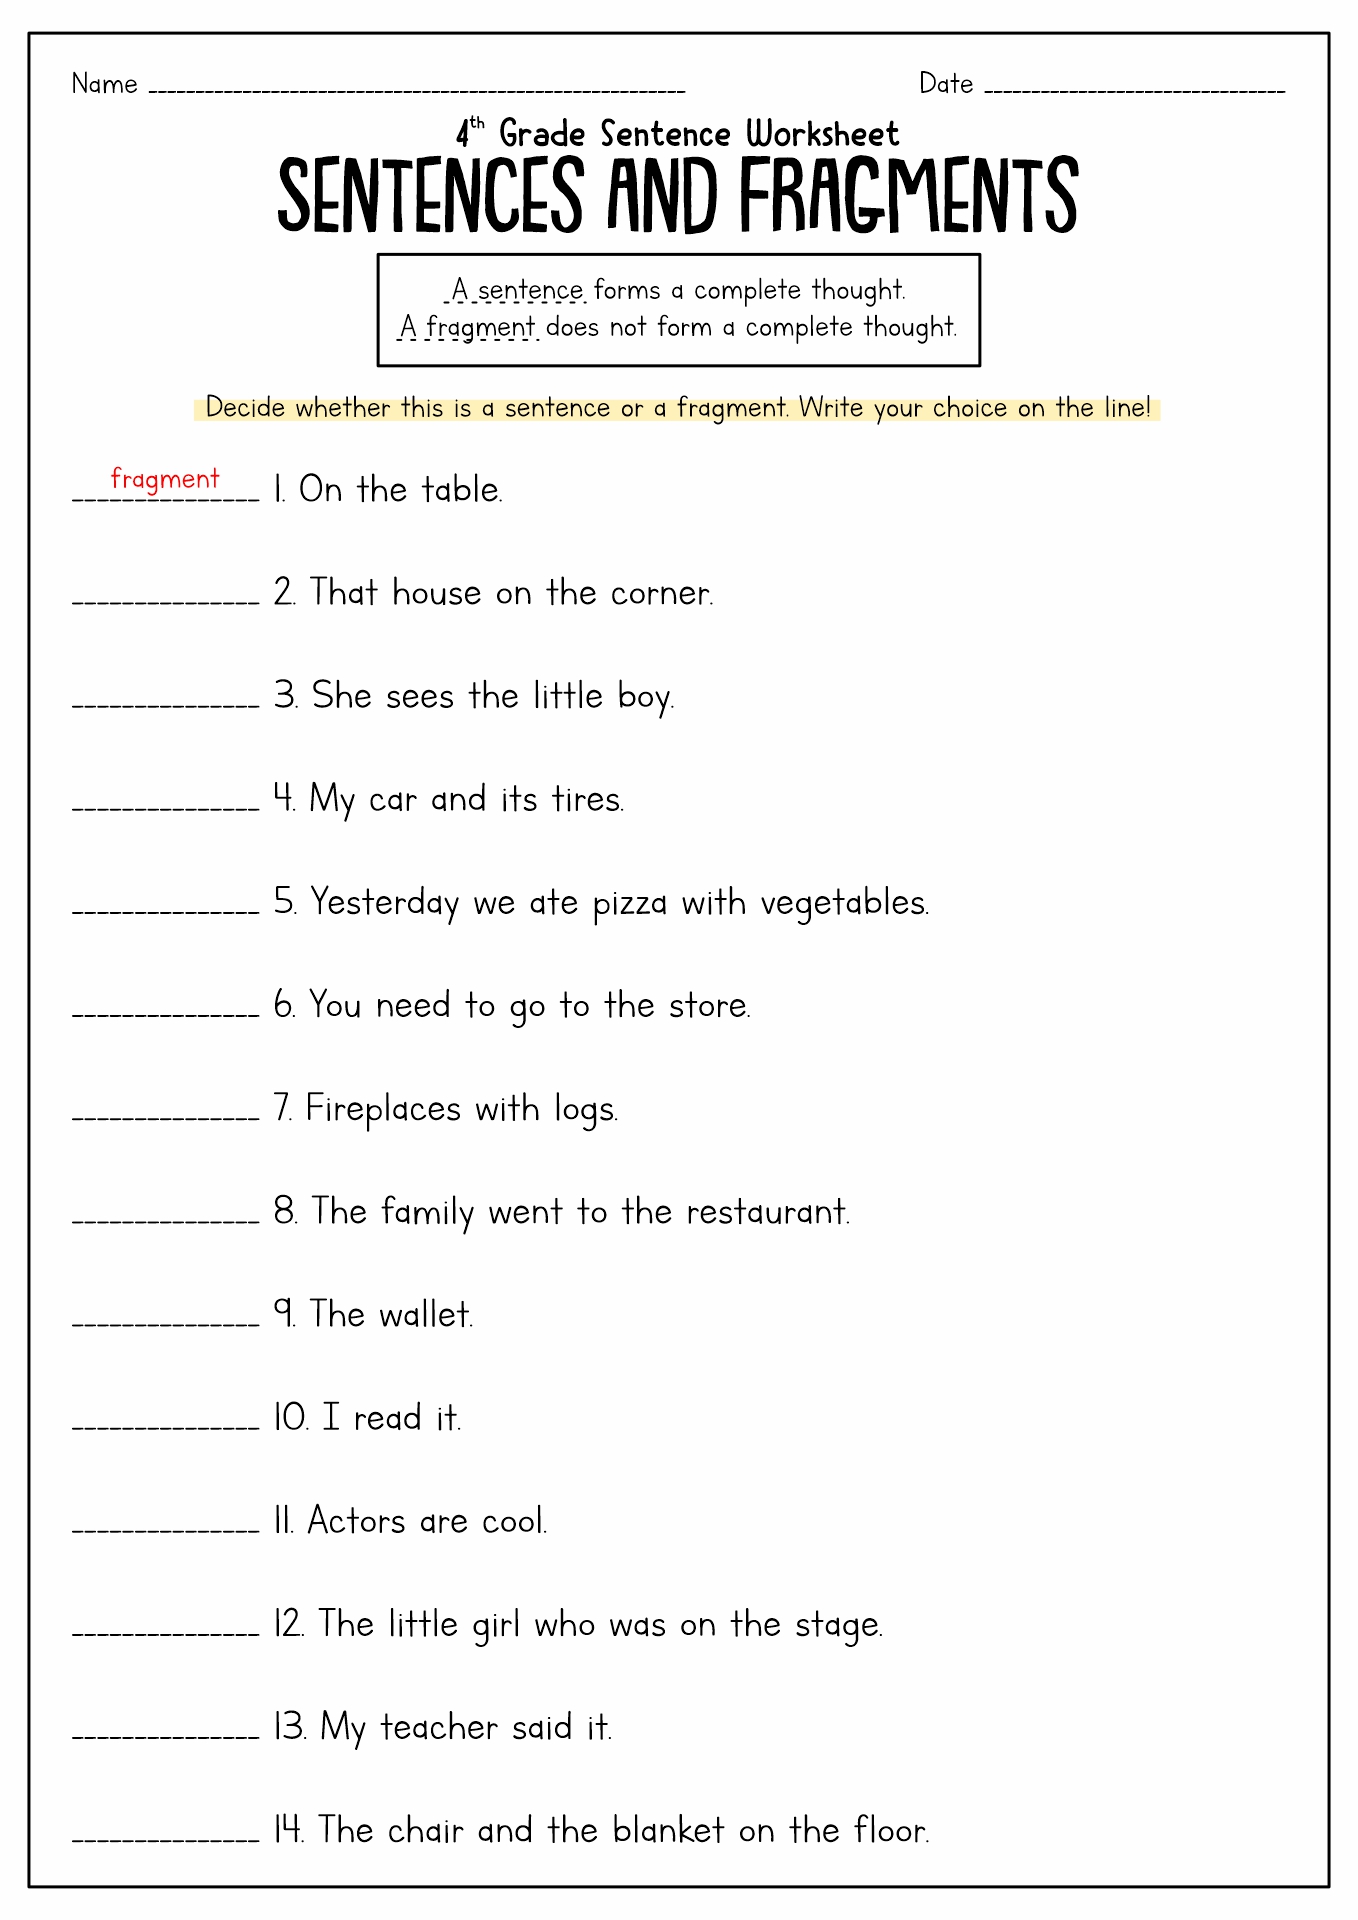 Fix Sentence Fragments Worksheet